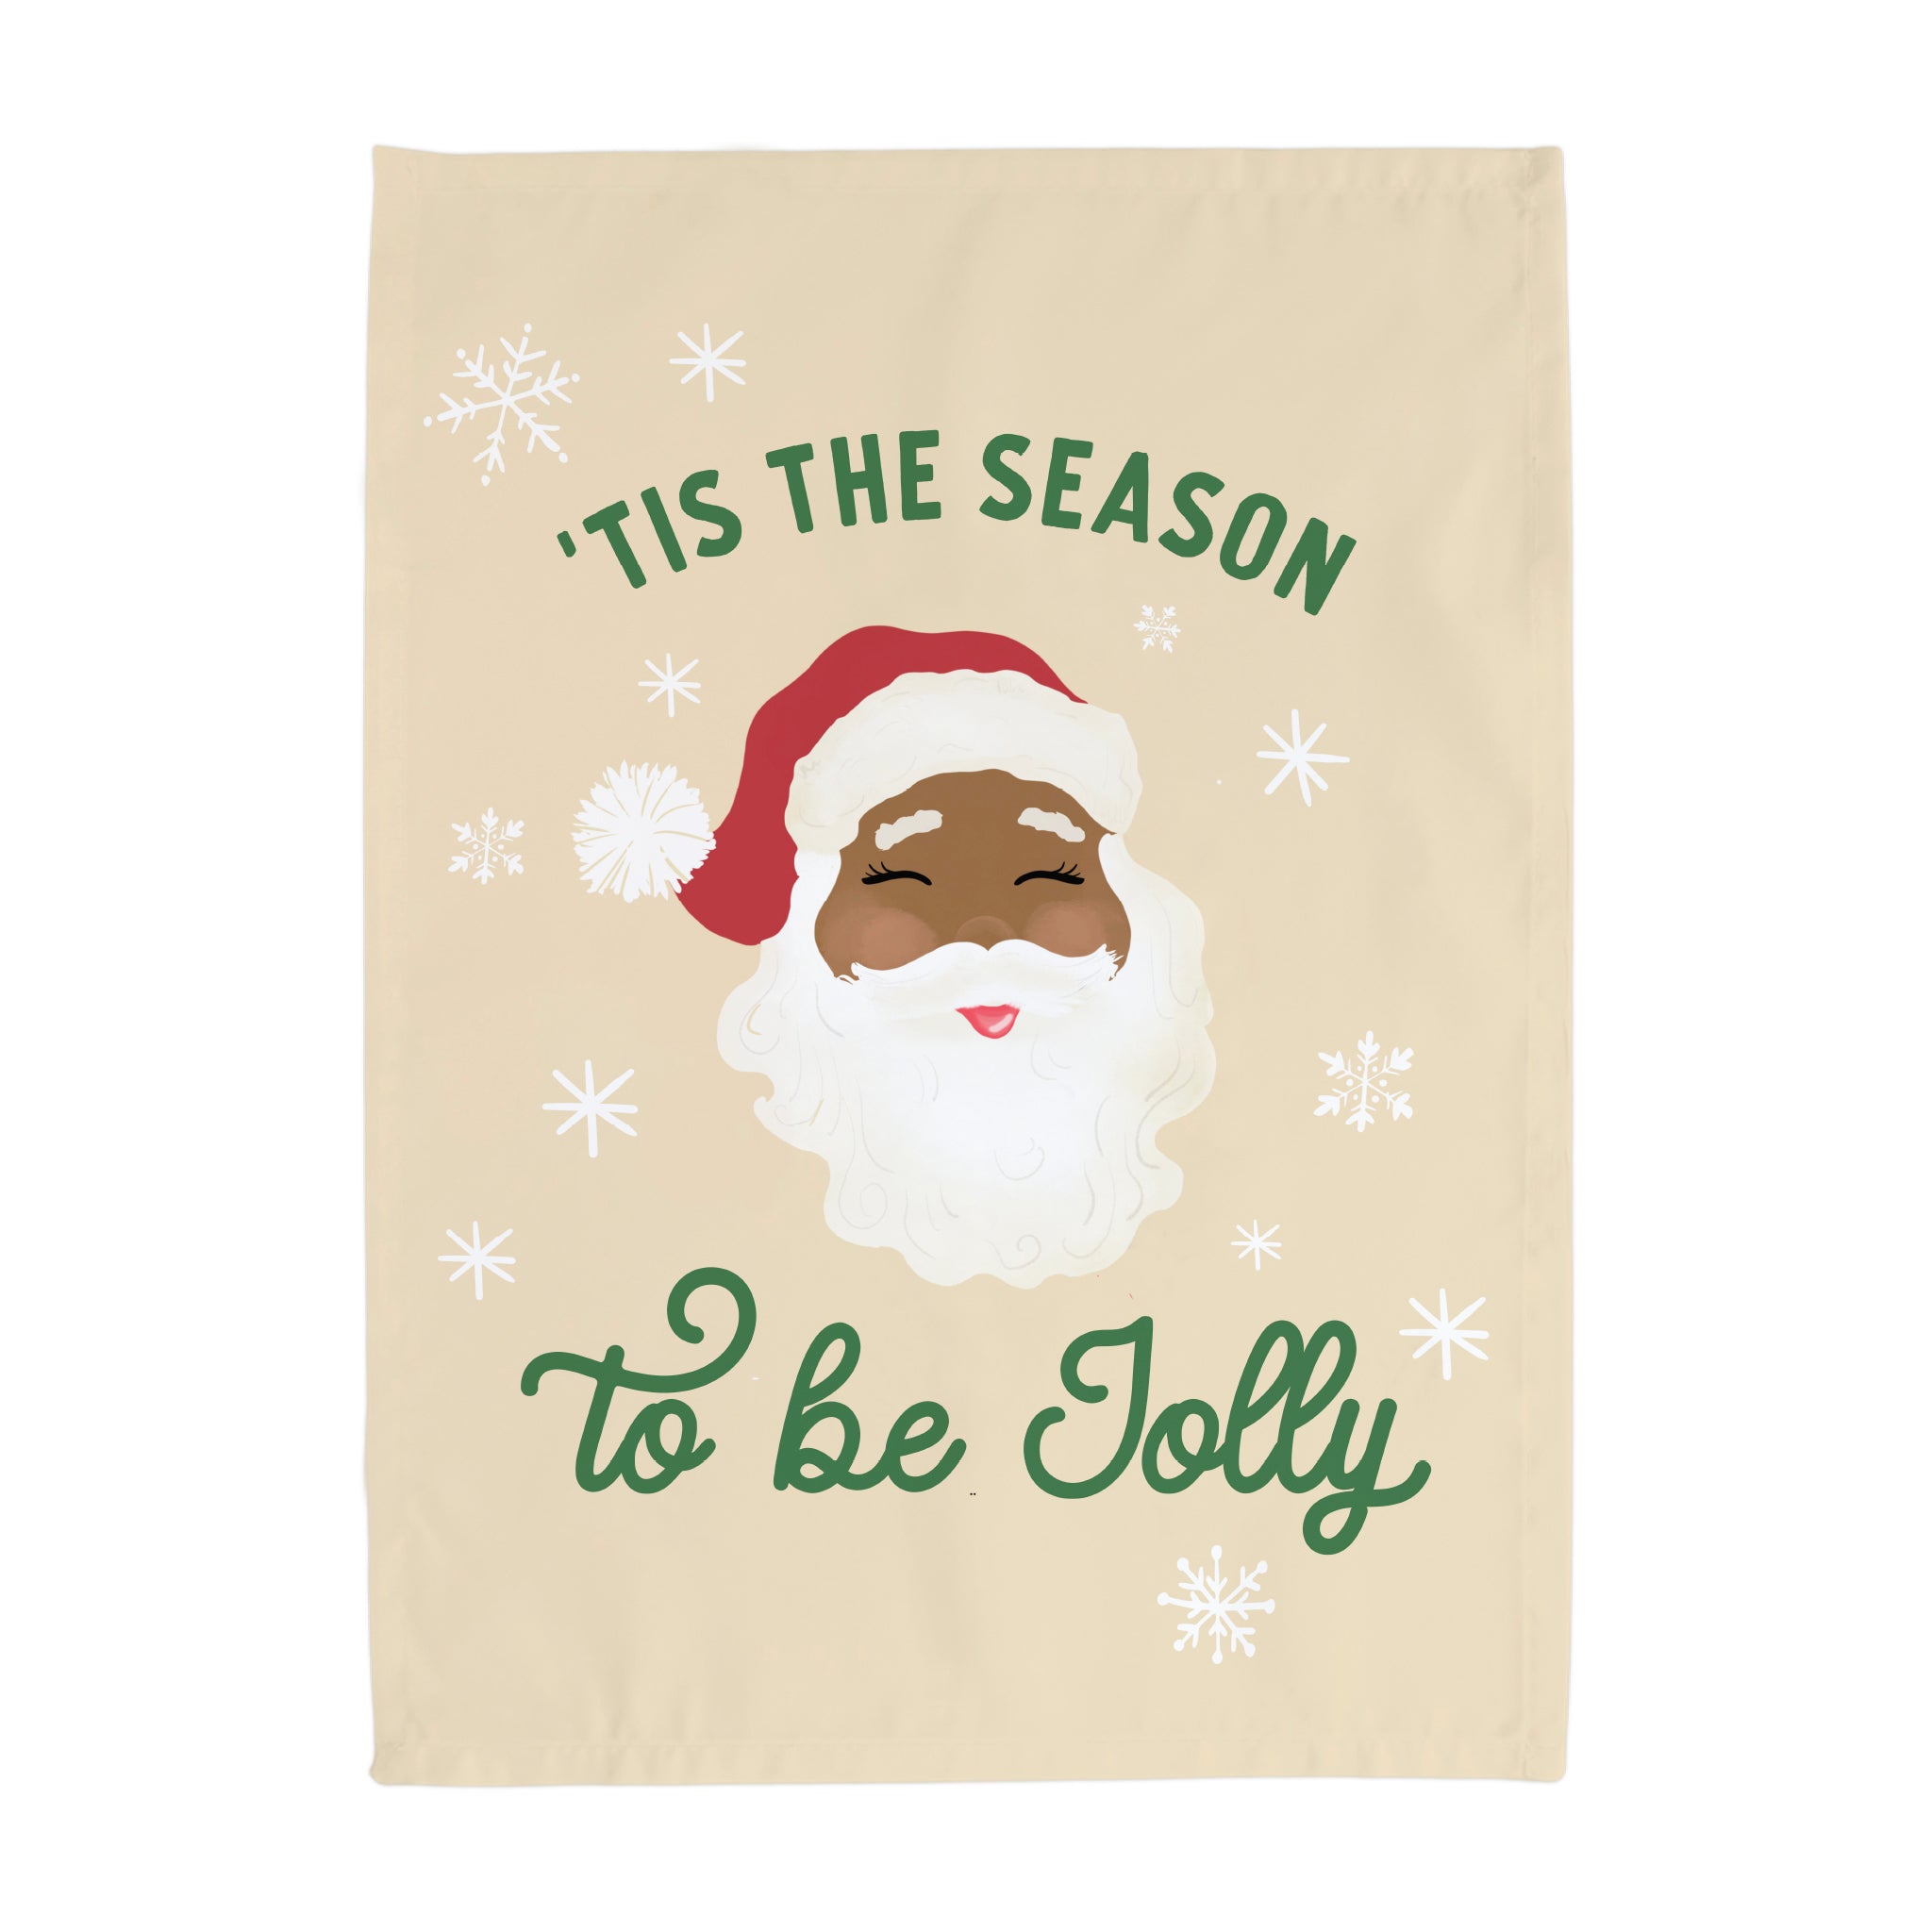 Tis the Season to Be Merry 